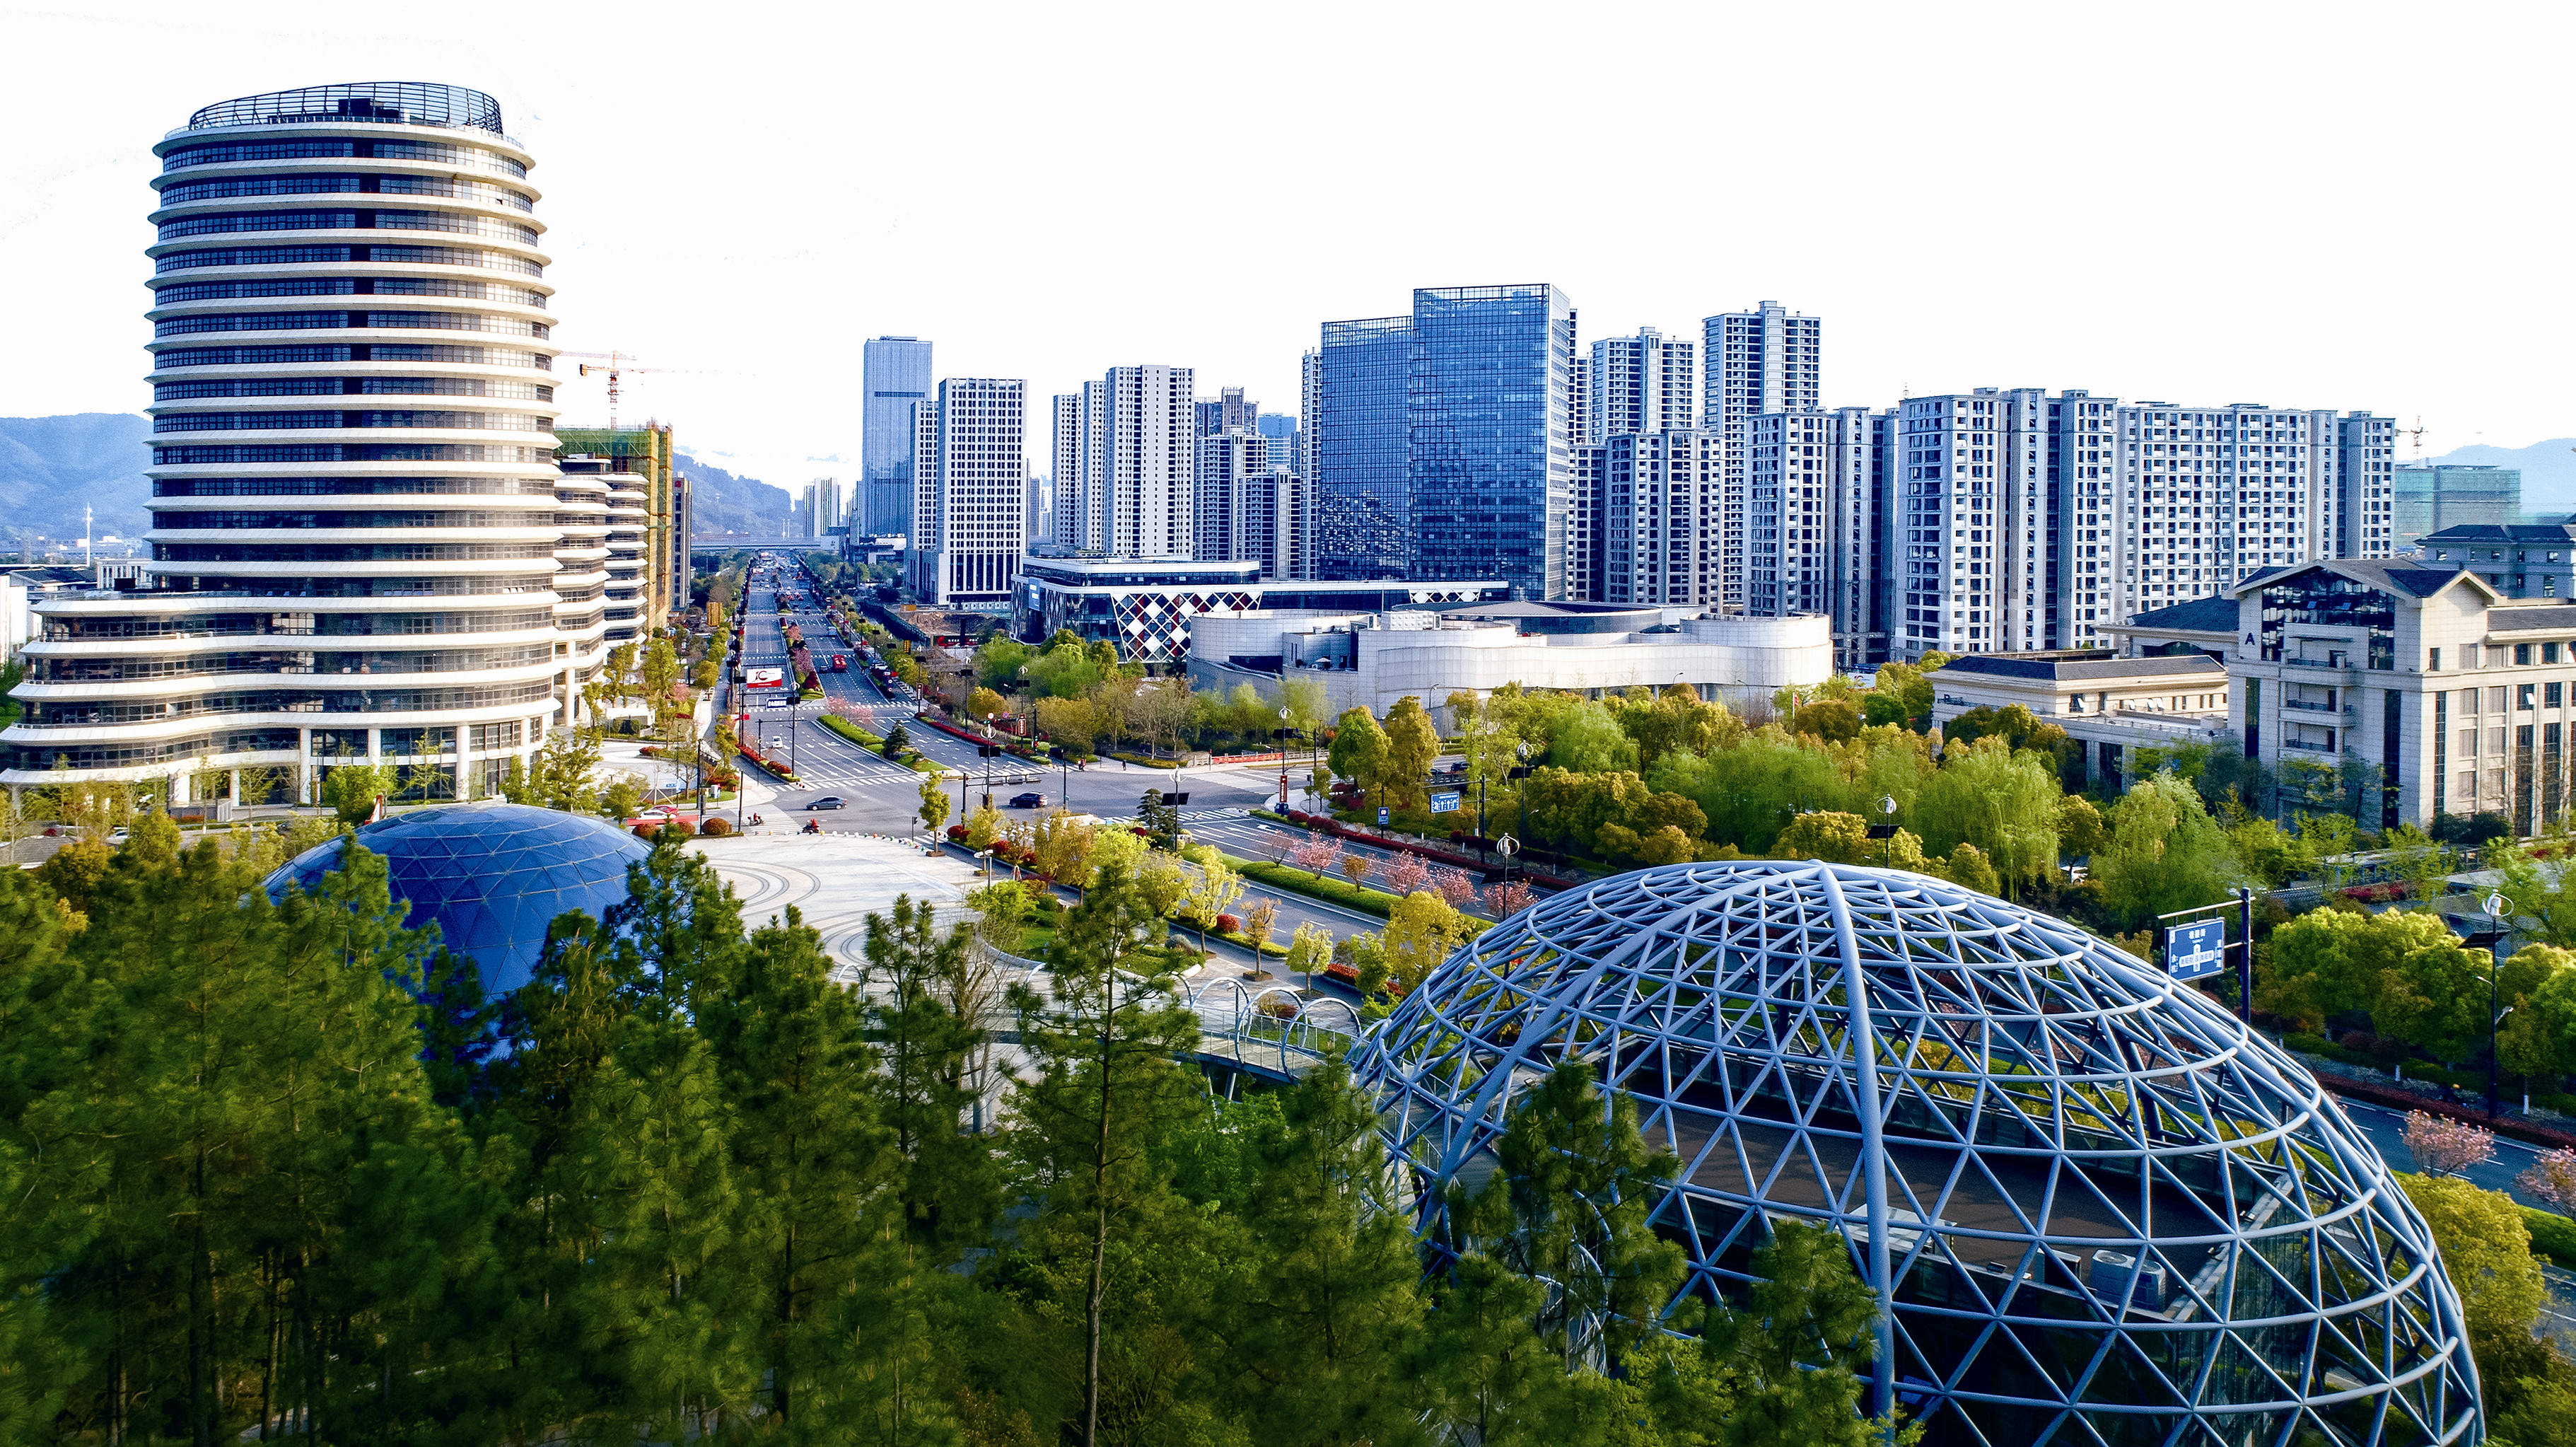 青山湖科技城未来5年图片